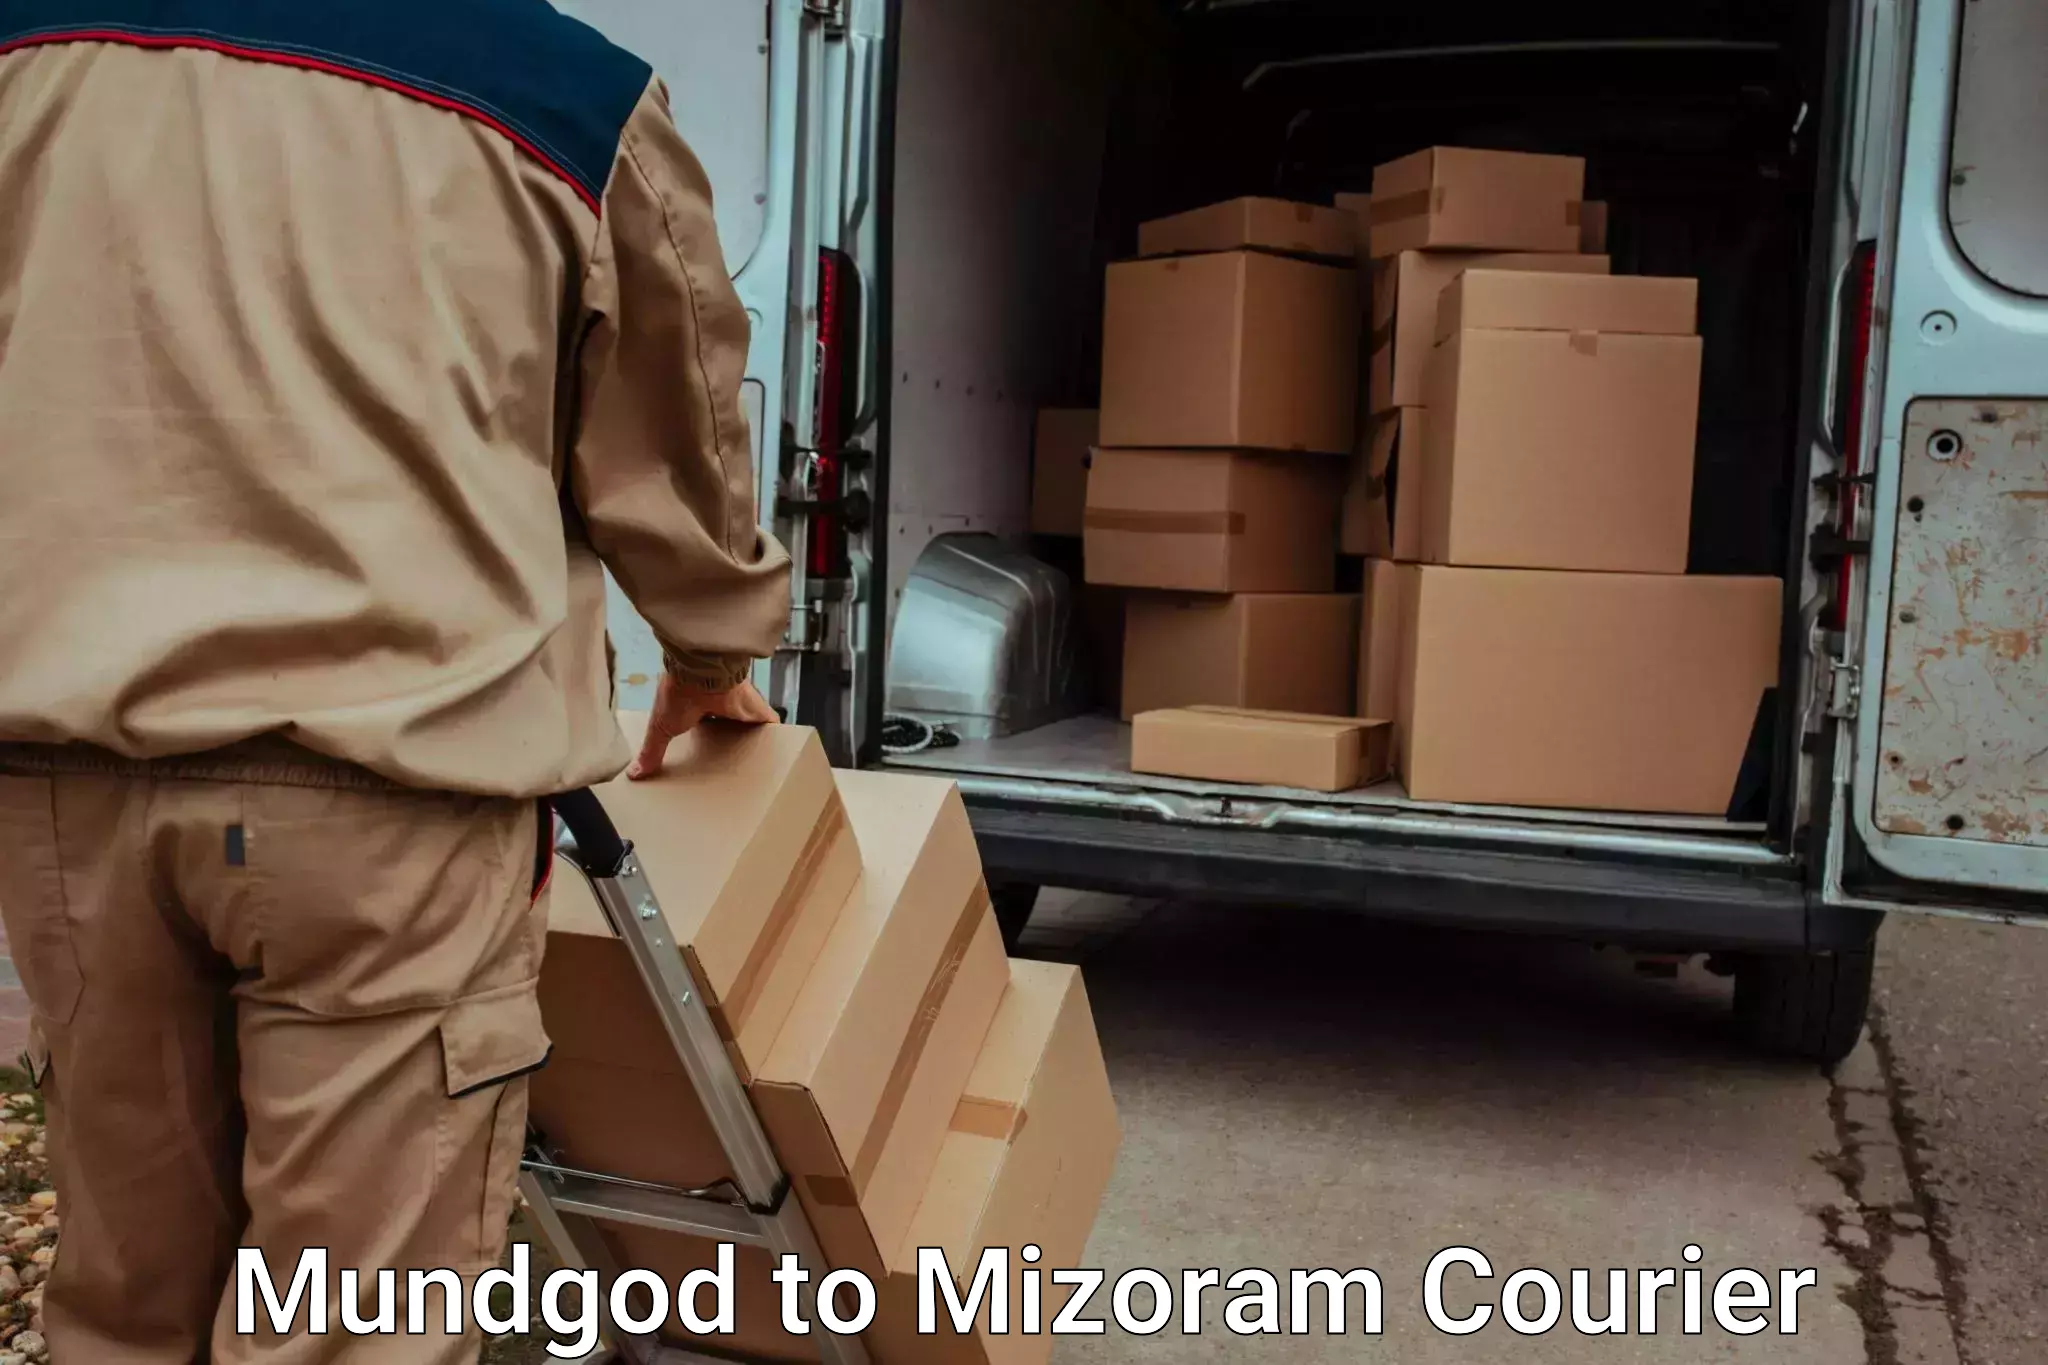 Luggage delivery network Mundgod to Mizoram